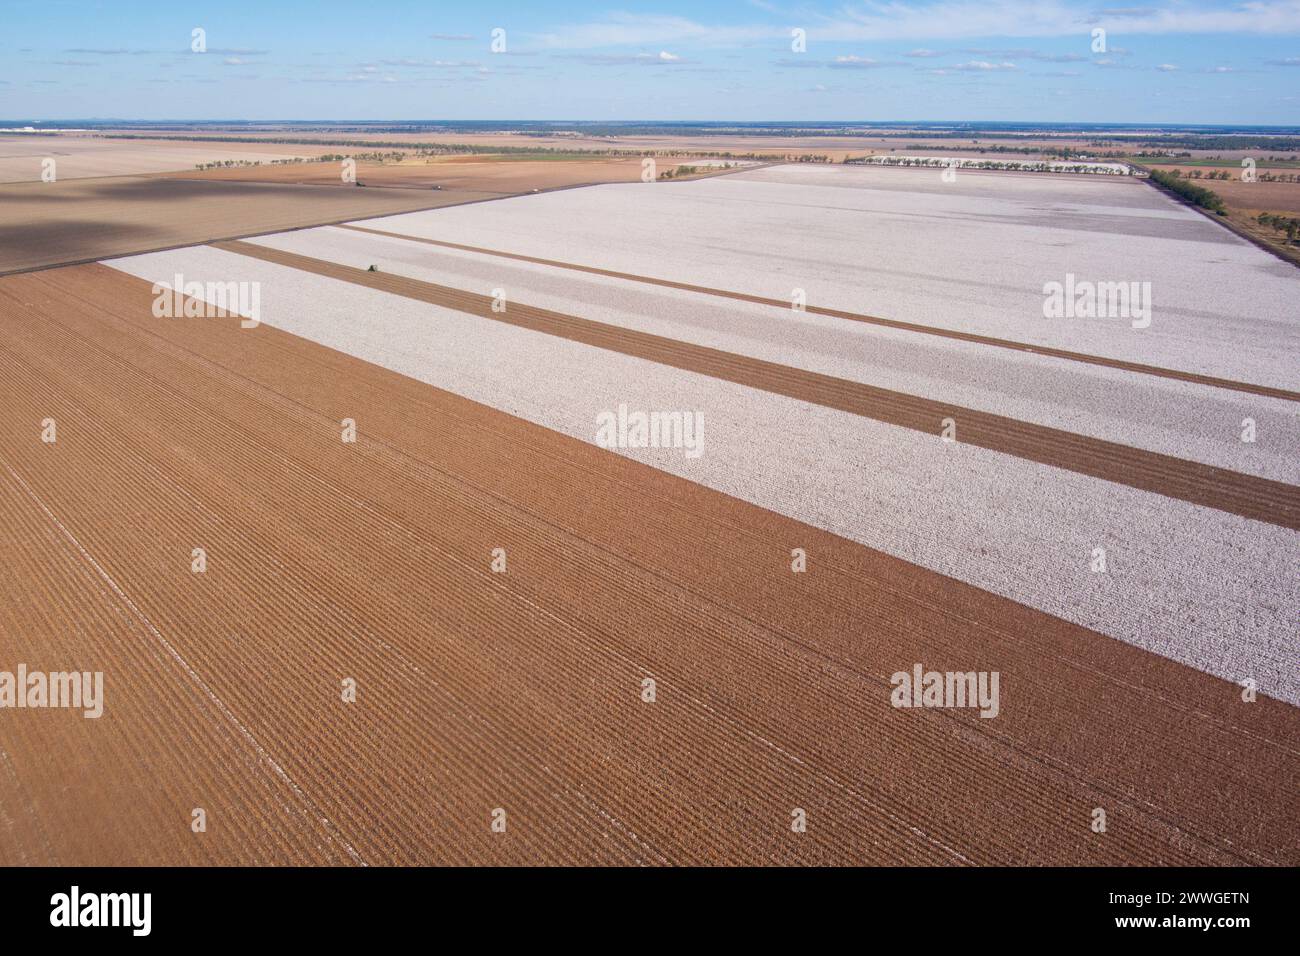 In der Nähe von Dalby Queensland Australien werden kommerzielle, weitläufige Baumwollfelder geerntet Stockfoto